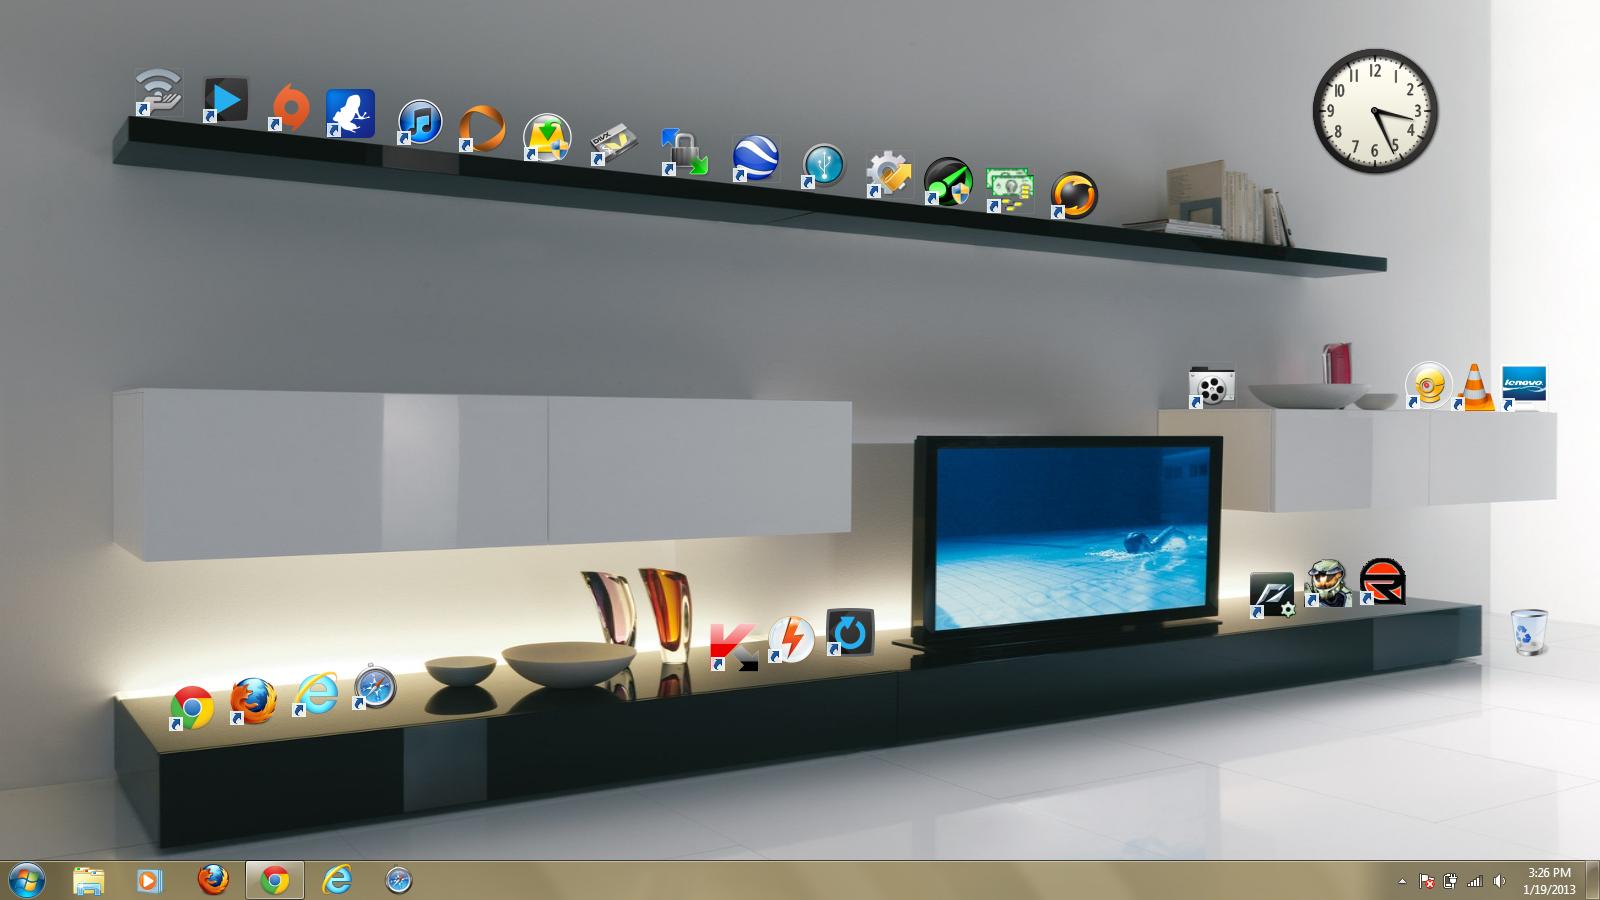 50+] Shelf Desktop Wallpaper - WallpaperSafari